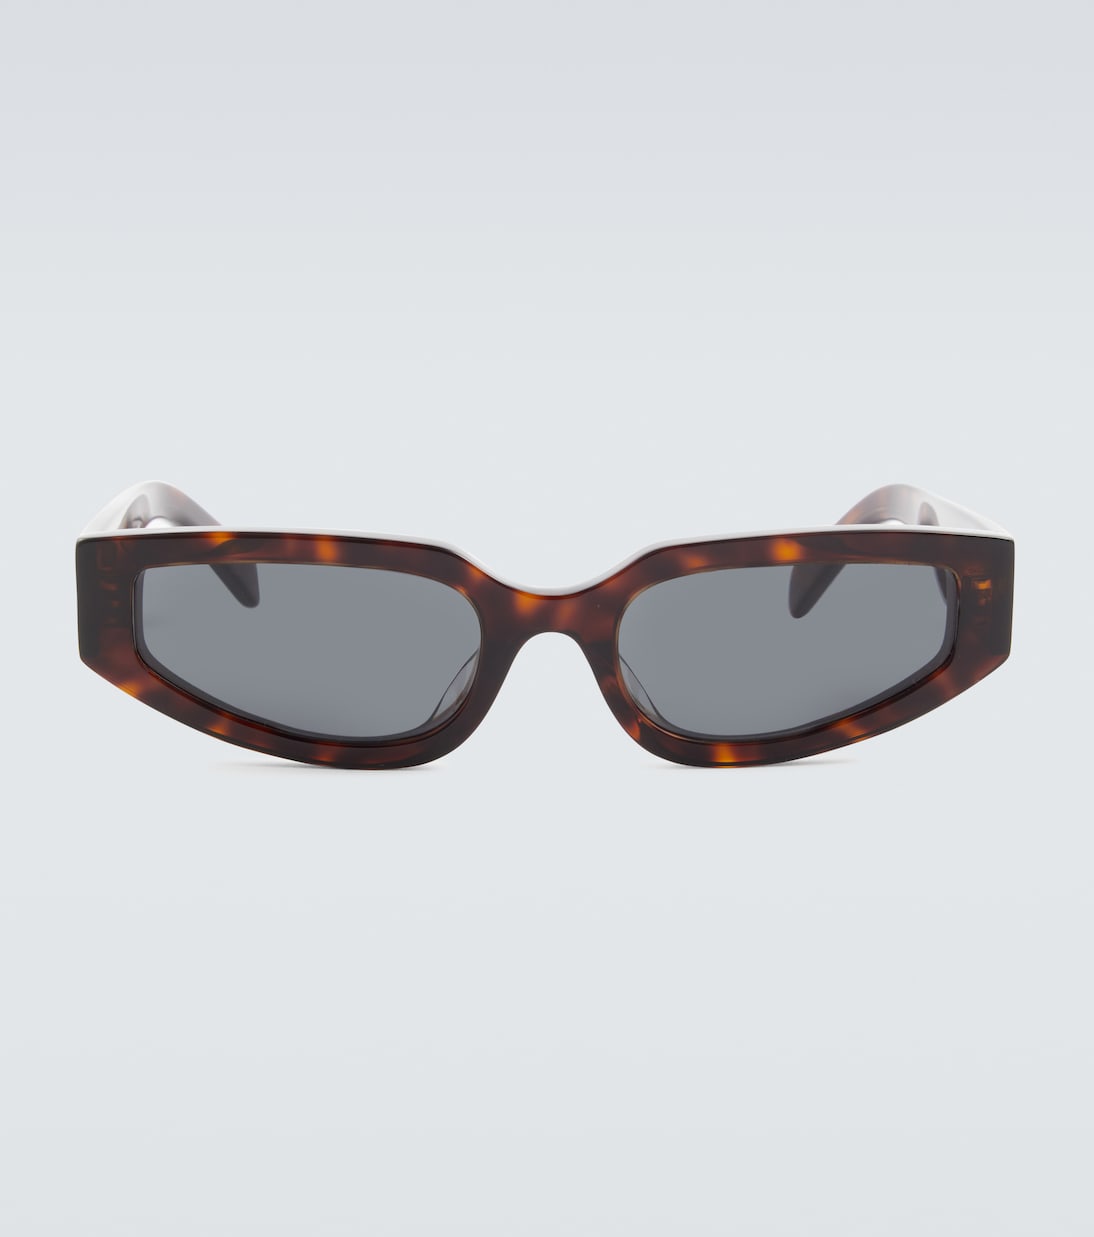 Солнцезащитные очки triomphe прямоугольной формы Celine Eyewear, коричневый